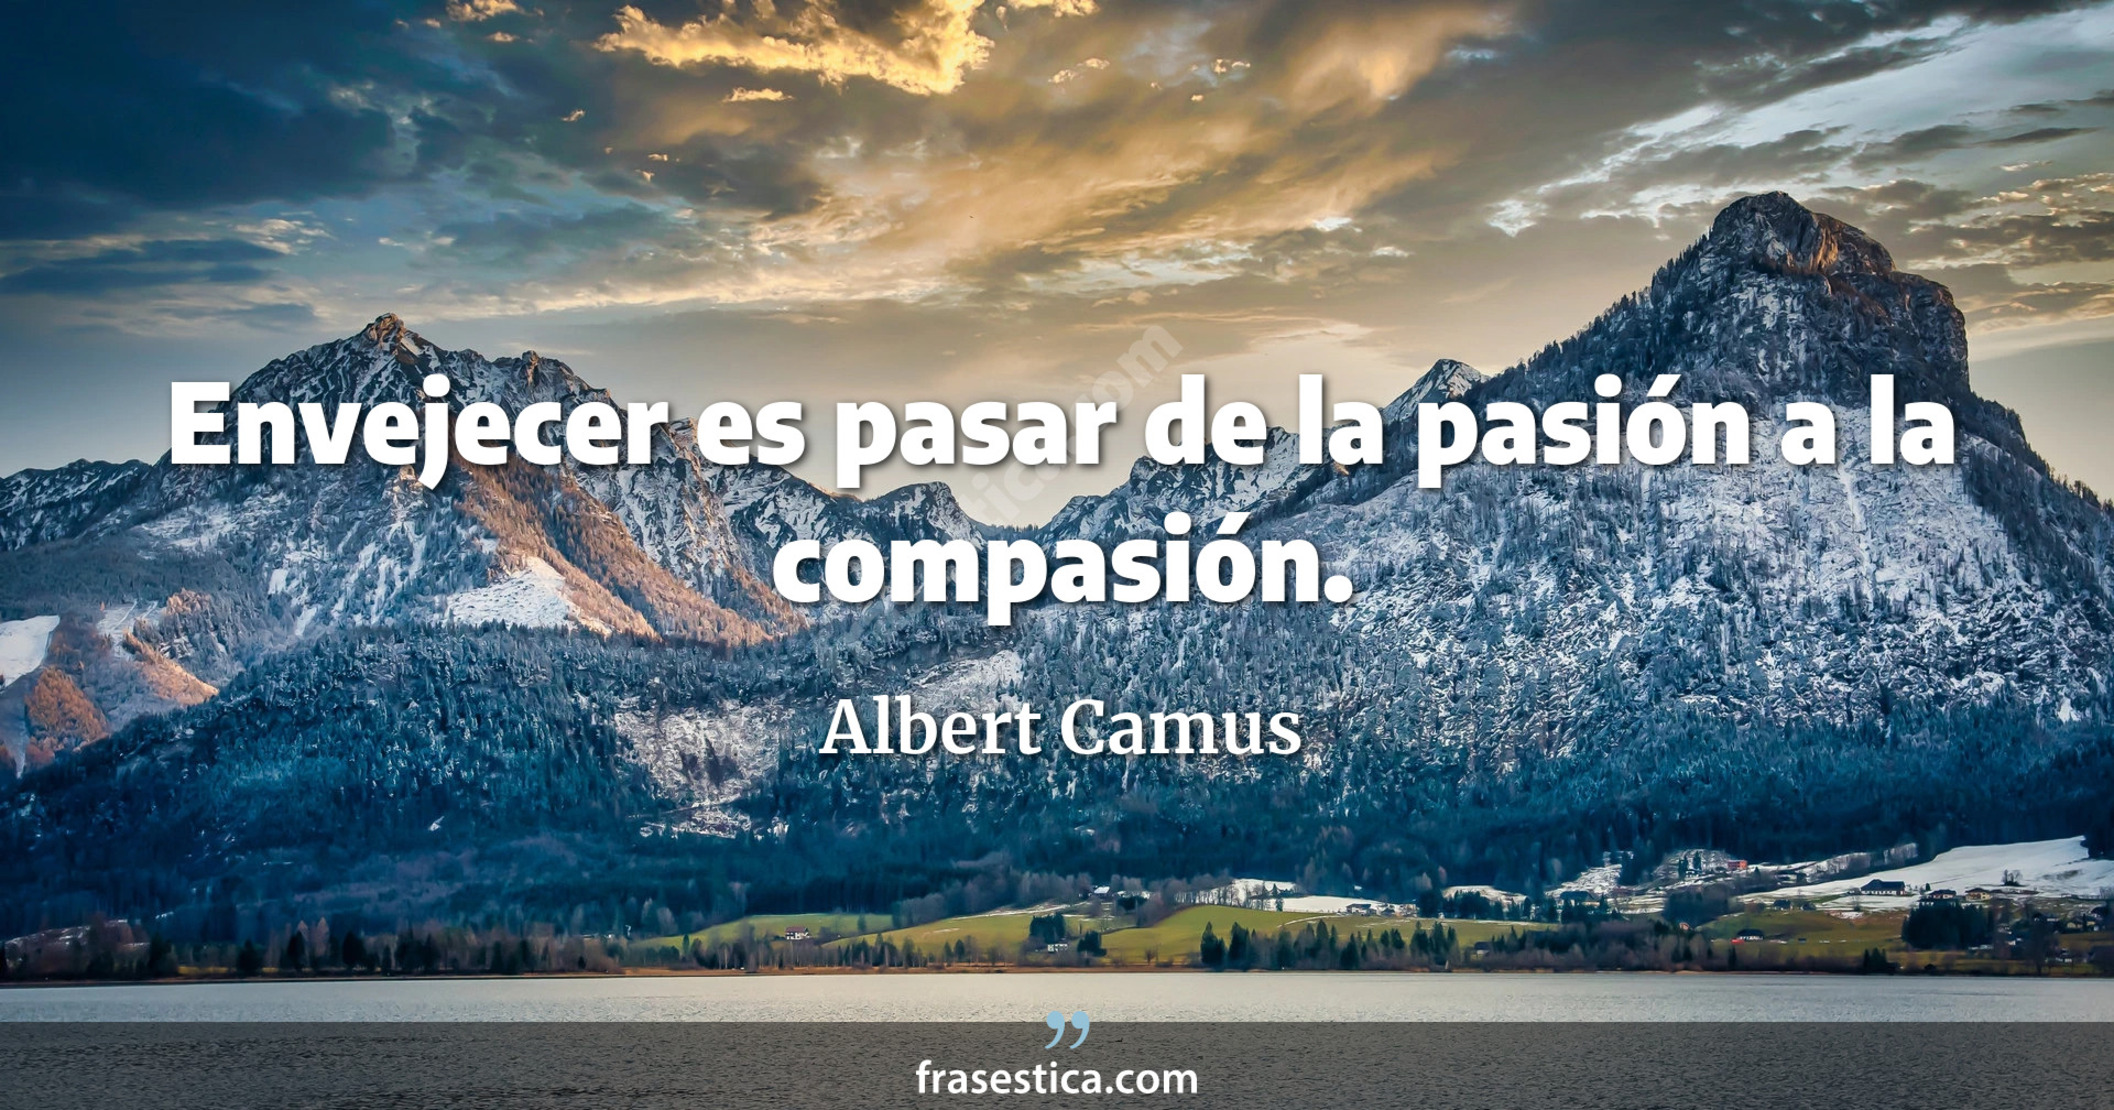 Envejecer es pasar de la pasión a la compasión. - Albert Camus